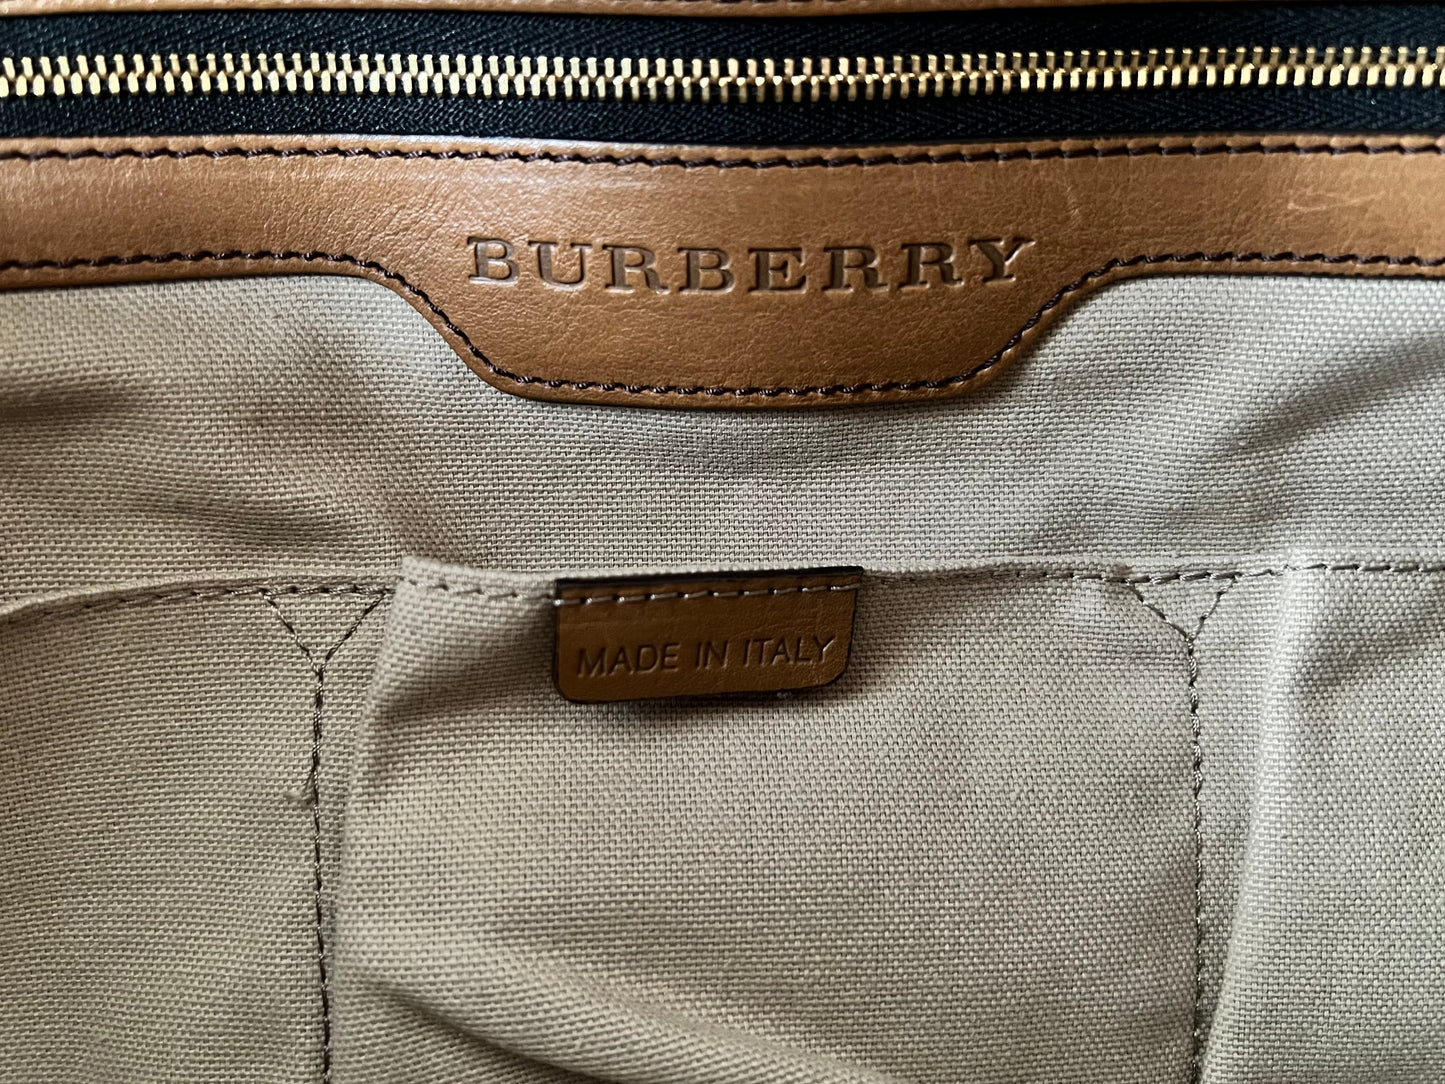 Burberry Amelia Diaper bag